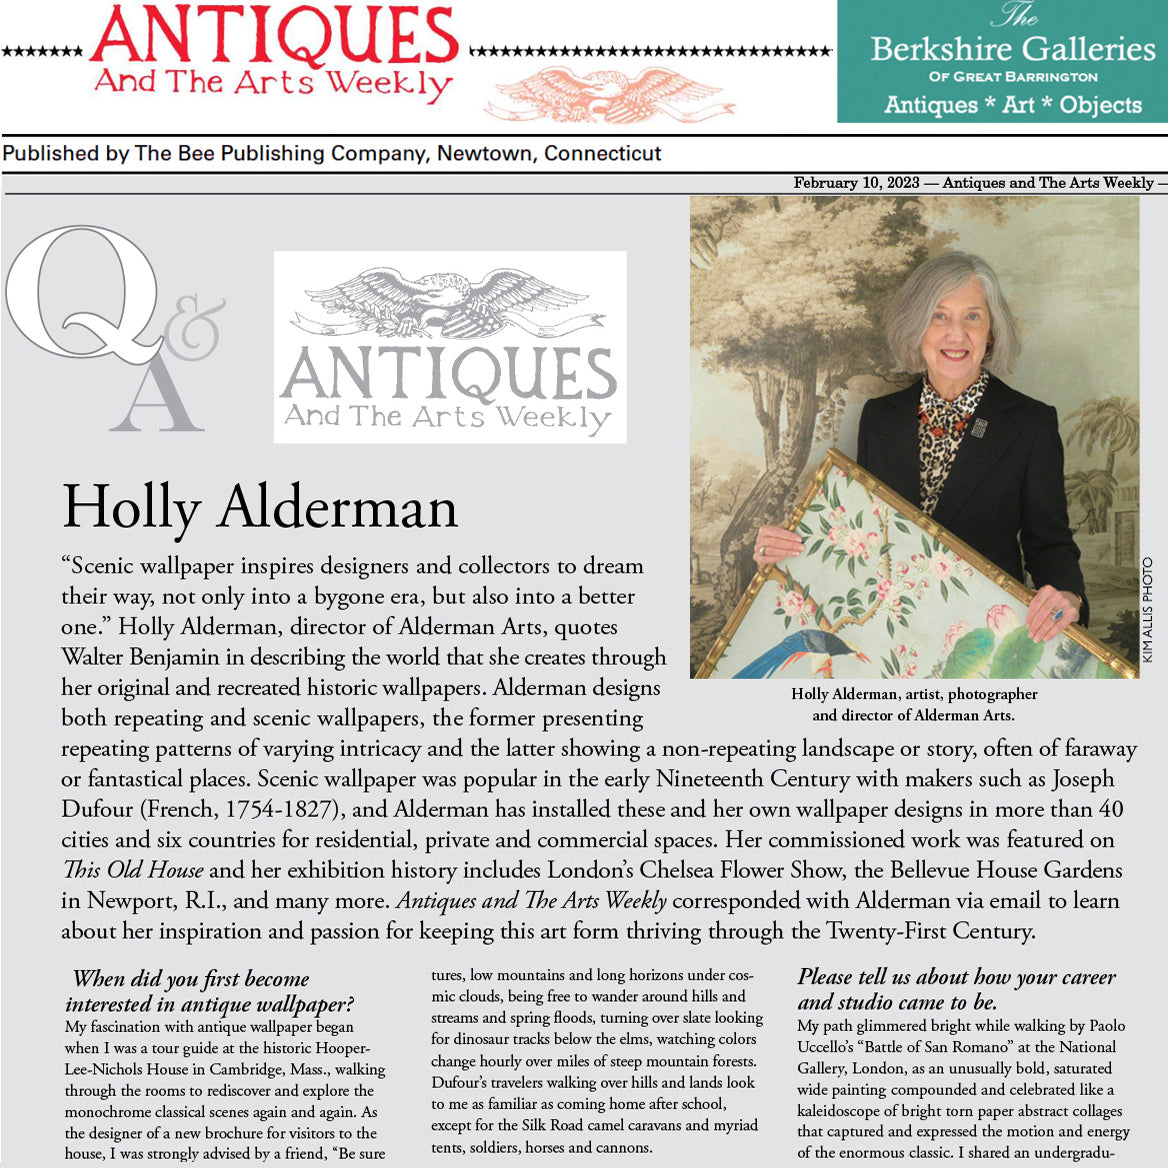 About Alderman Arts